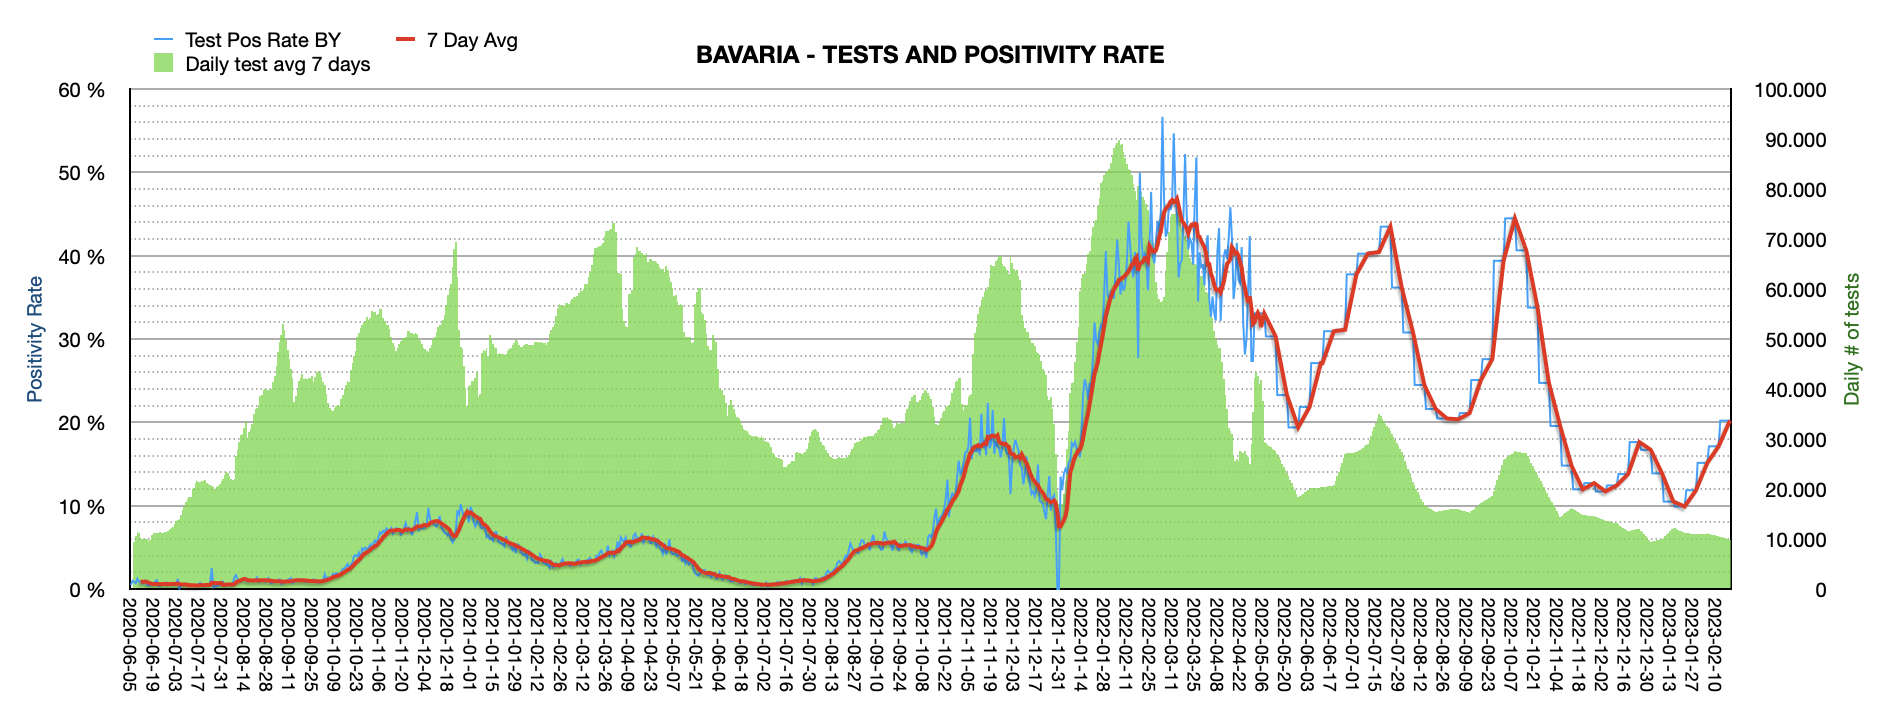 Grafik mit durchgeführten PCR Tests pro Tag in Bayern seit Juni 2020. Die Zahl der Tests pro Tag ist mit 9.863 ziemlich niedrig und weit vom Maximum von ca. 100.000 Tests/Tag entfernt. Die Positivrate steigt auf jetzt 20,22%.